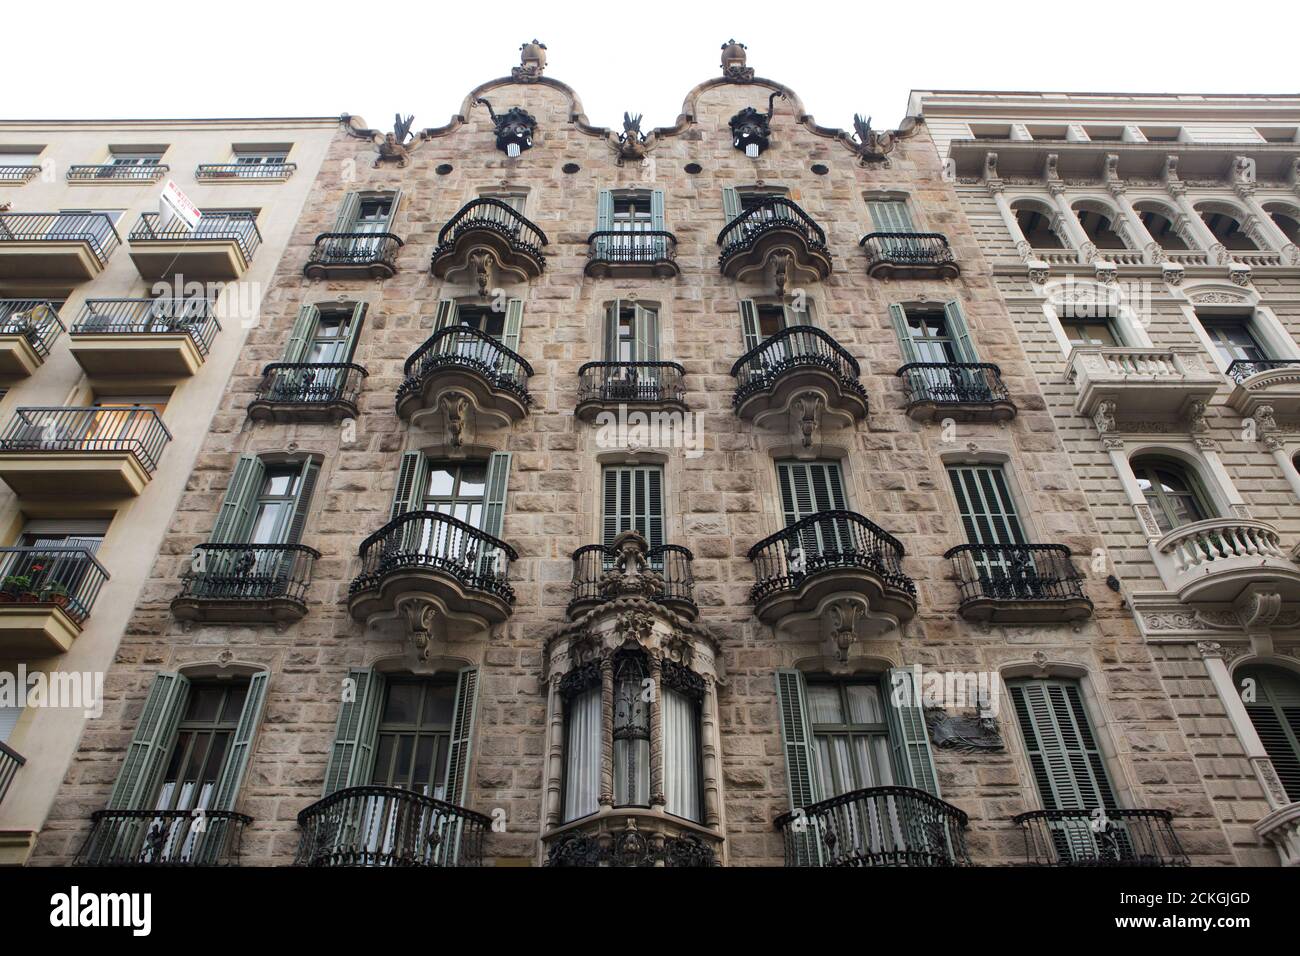 Casa Calvet entworfen vom katalanischen modernistischen Architekten Antoni Gaudí in Barcelona, Katalonien, Spanien. Das Herrenhaus im Auftrag des katalanischen Textilherstellers Pere Màrtir Calvet i Carbonell wurde zwischen 1898 und 1900 erbaut. Stockfoto